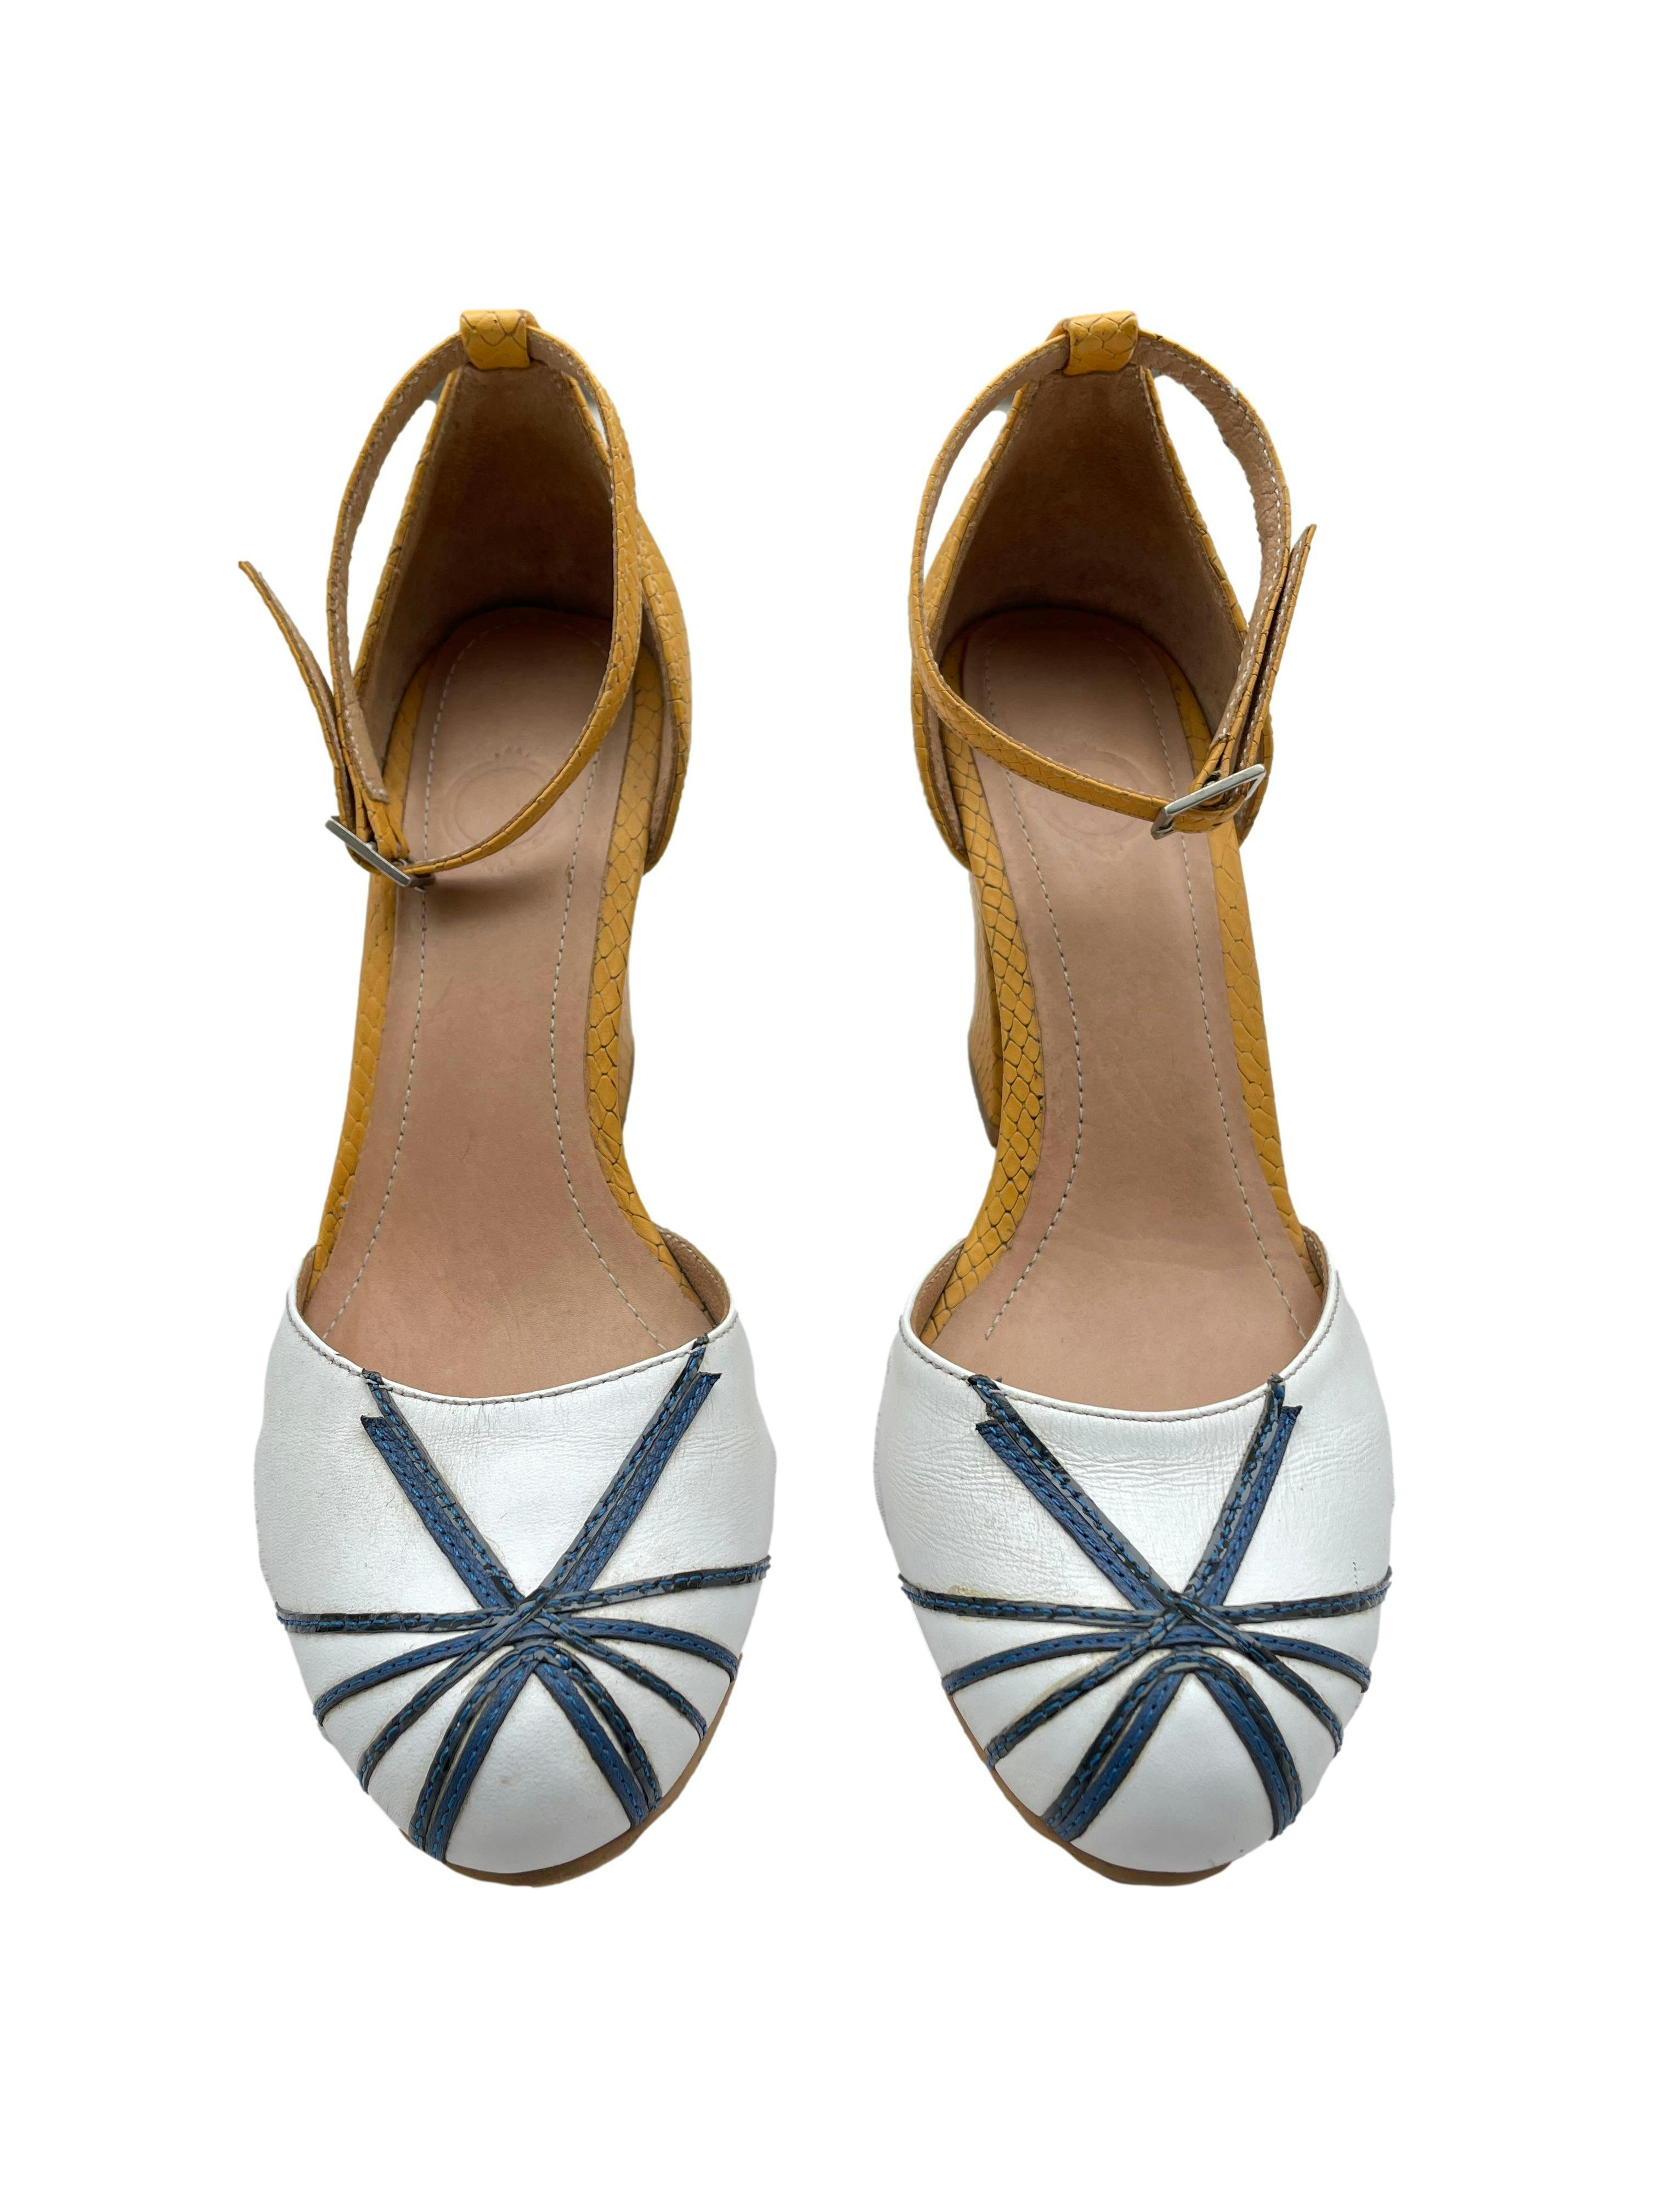 Zapatos de cuero con tacón mostaza y punta blanca con tiras azules, correa en tobillo, taco 8 cm. Estado 9/10.